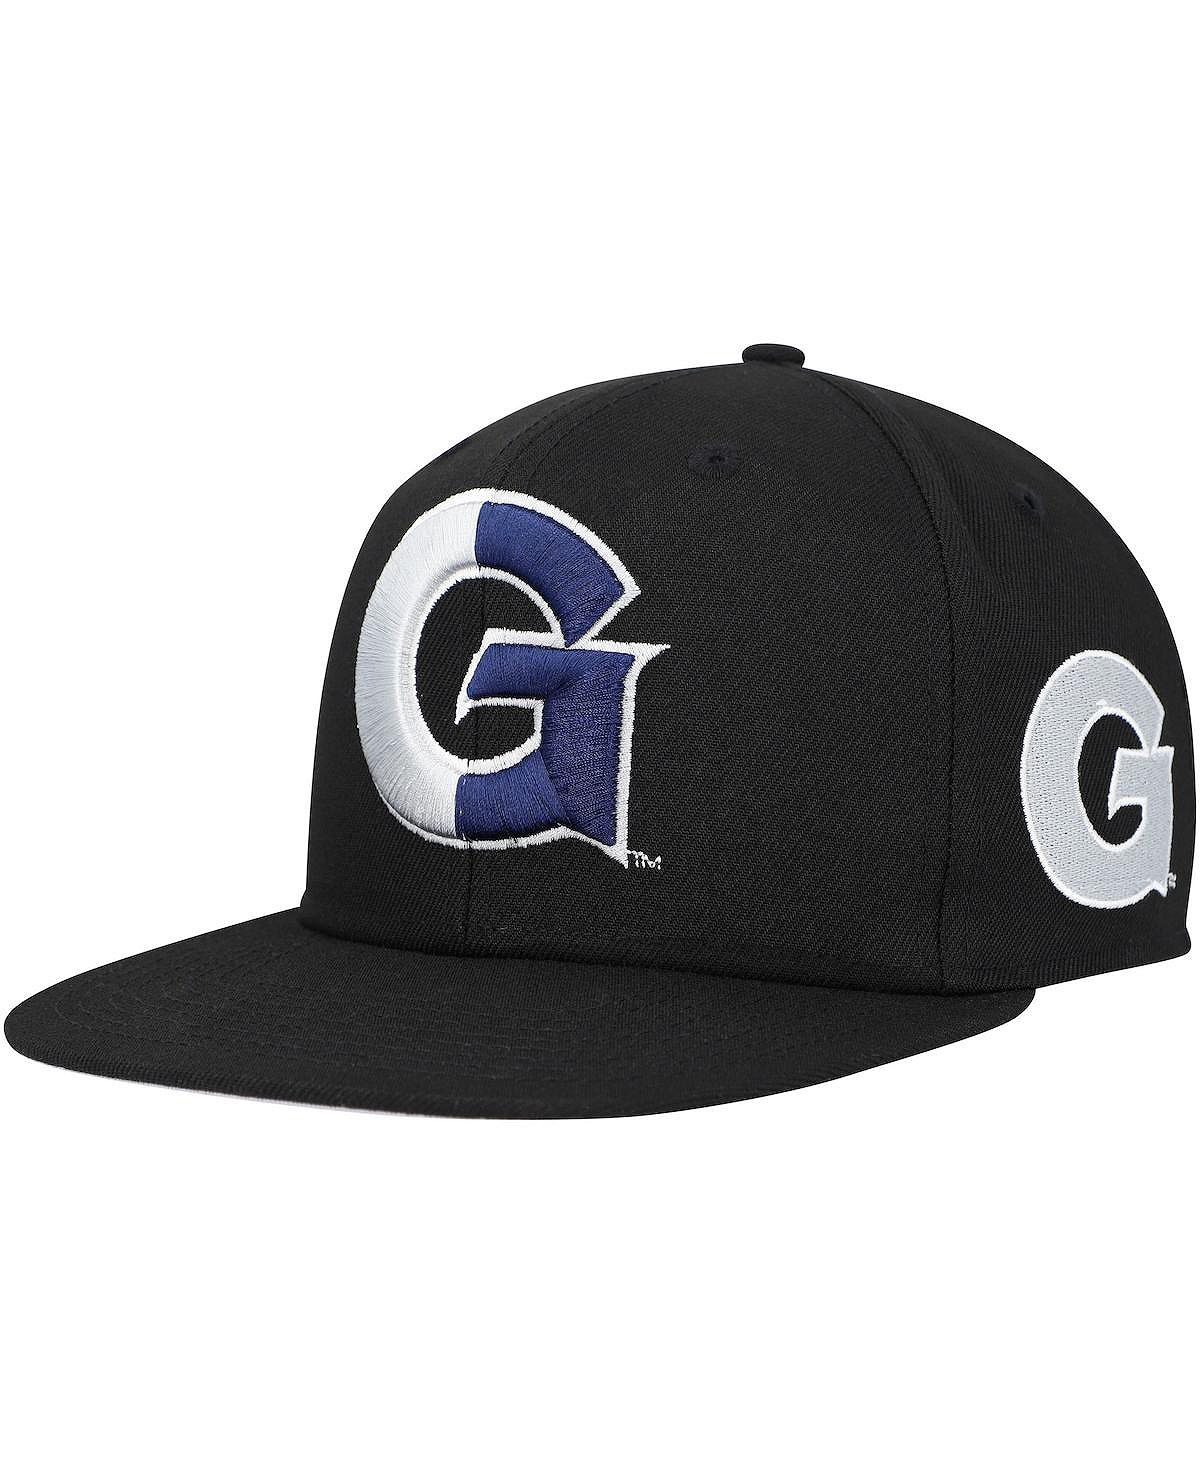 Мужская черная приталенная шляпа Georgetown Hoyas Lifestyle Mitchell & Ness